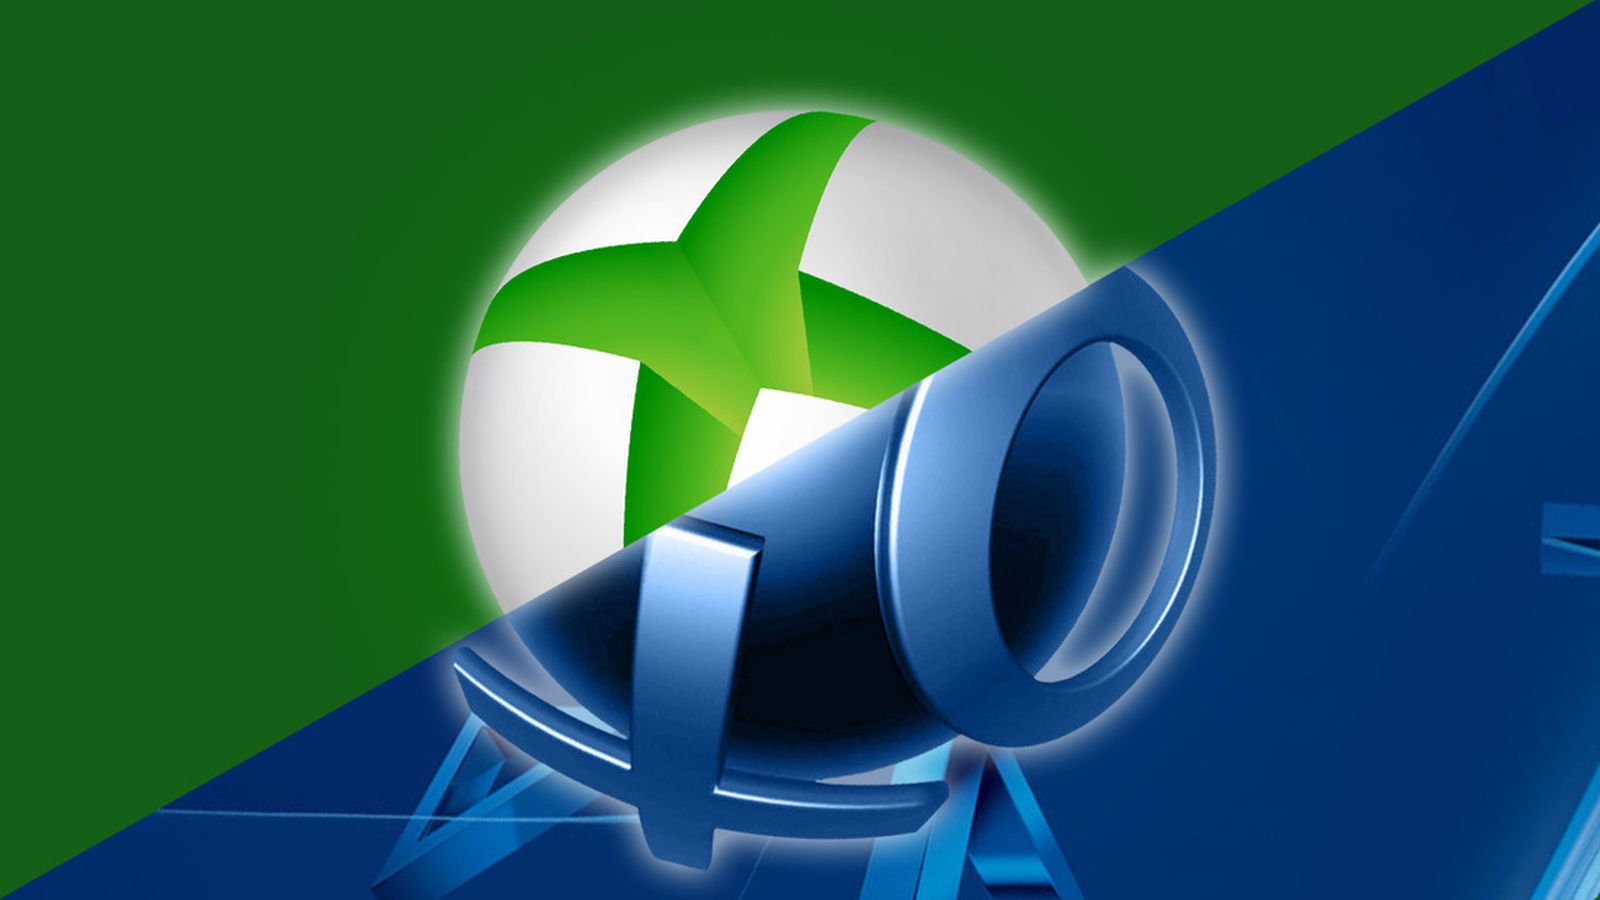 Slayaway Camp e Maid of Sker são games grátis do Xbox One em outubro